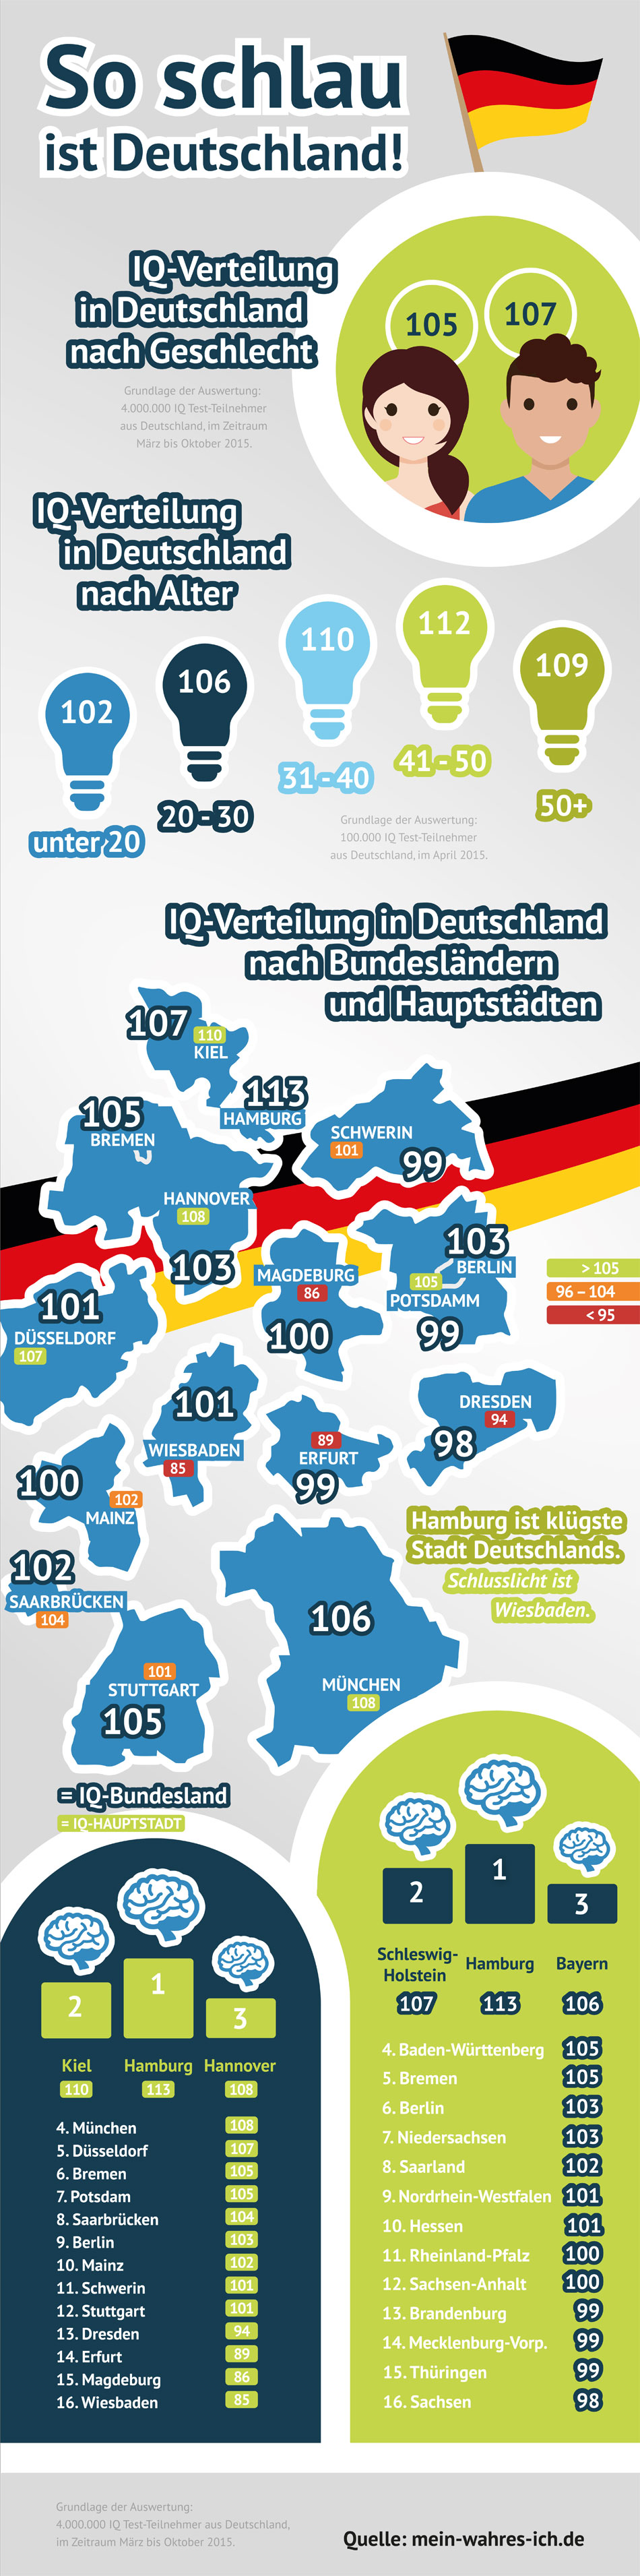 IQ-Studie-Deutschland: Die Infografik visualisiert die durchschnittliche IQ Verteilung nach Bundesländern, ihren Hauptstädten sowie der Verteilung nach Alter und Geschlecht.